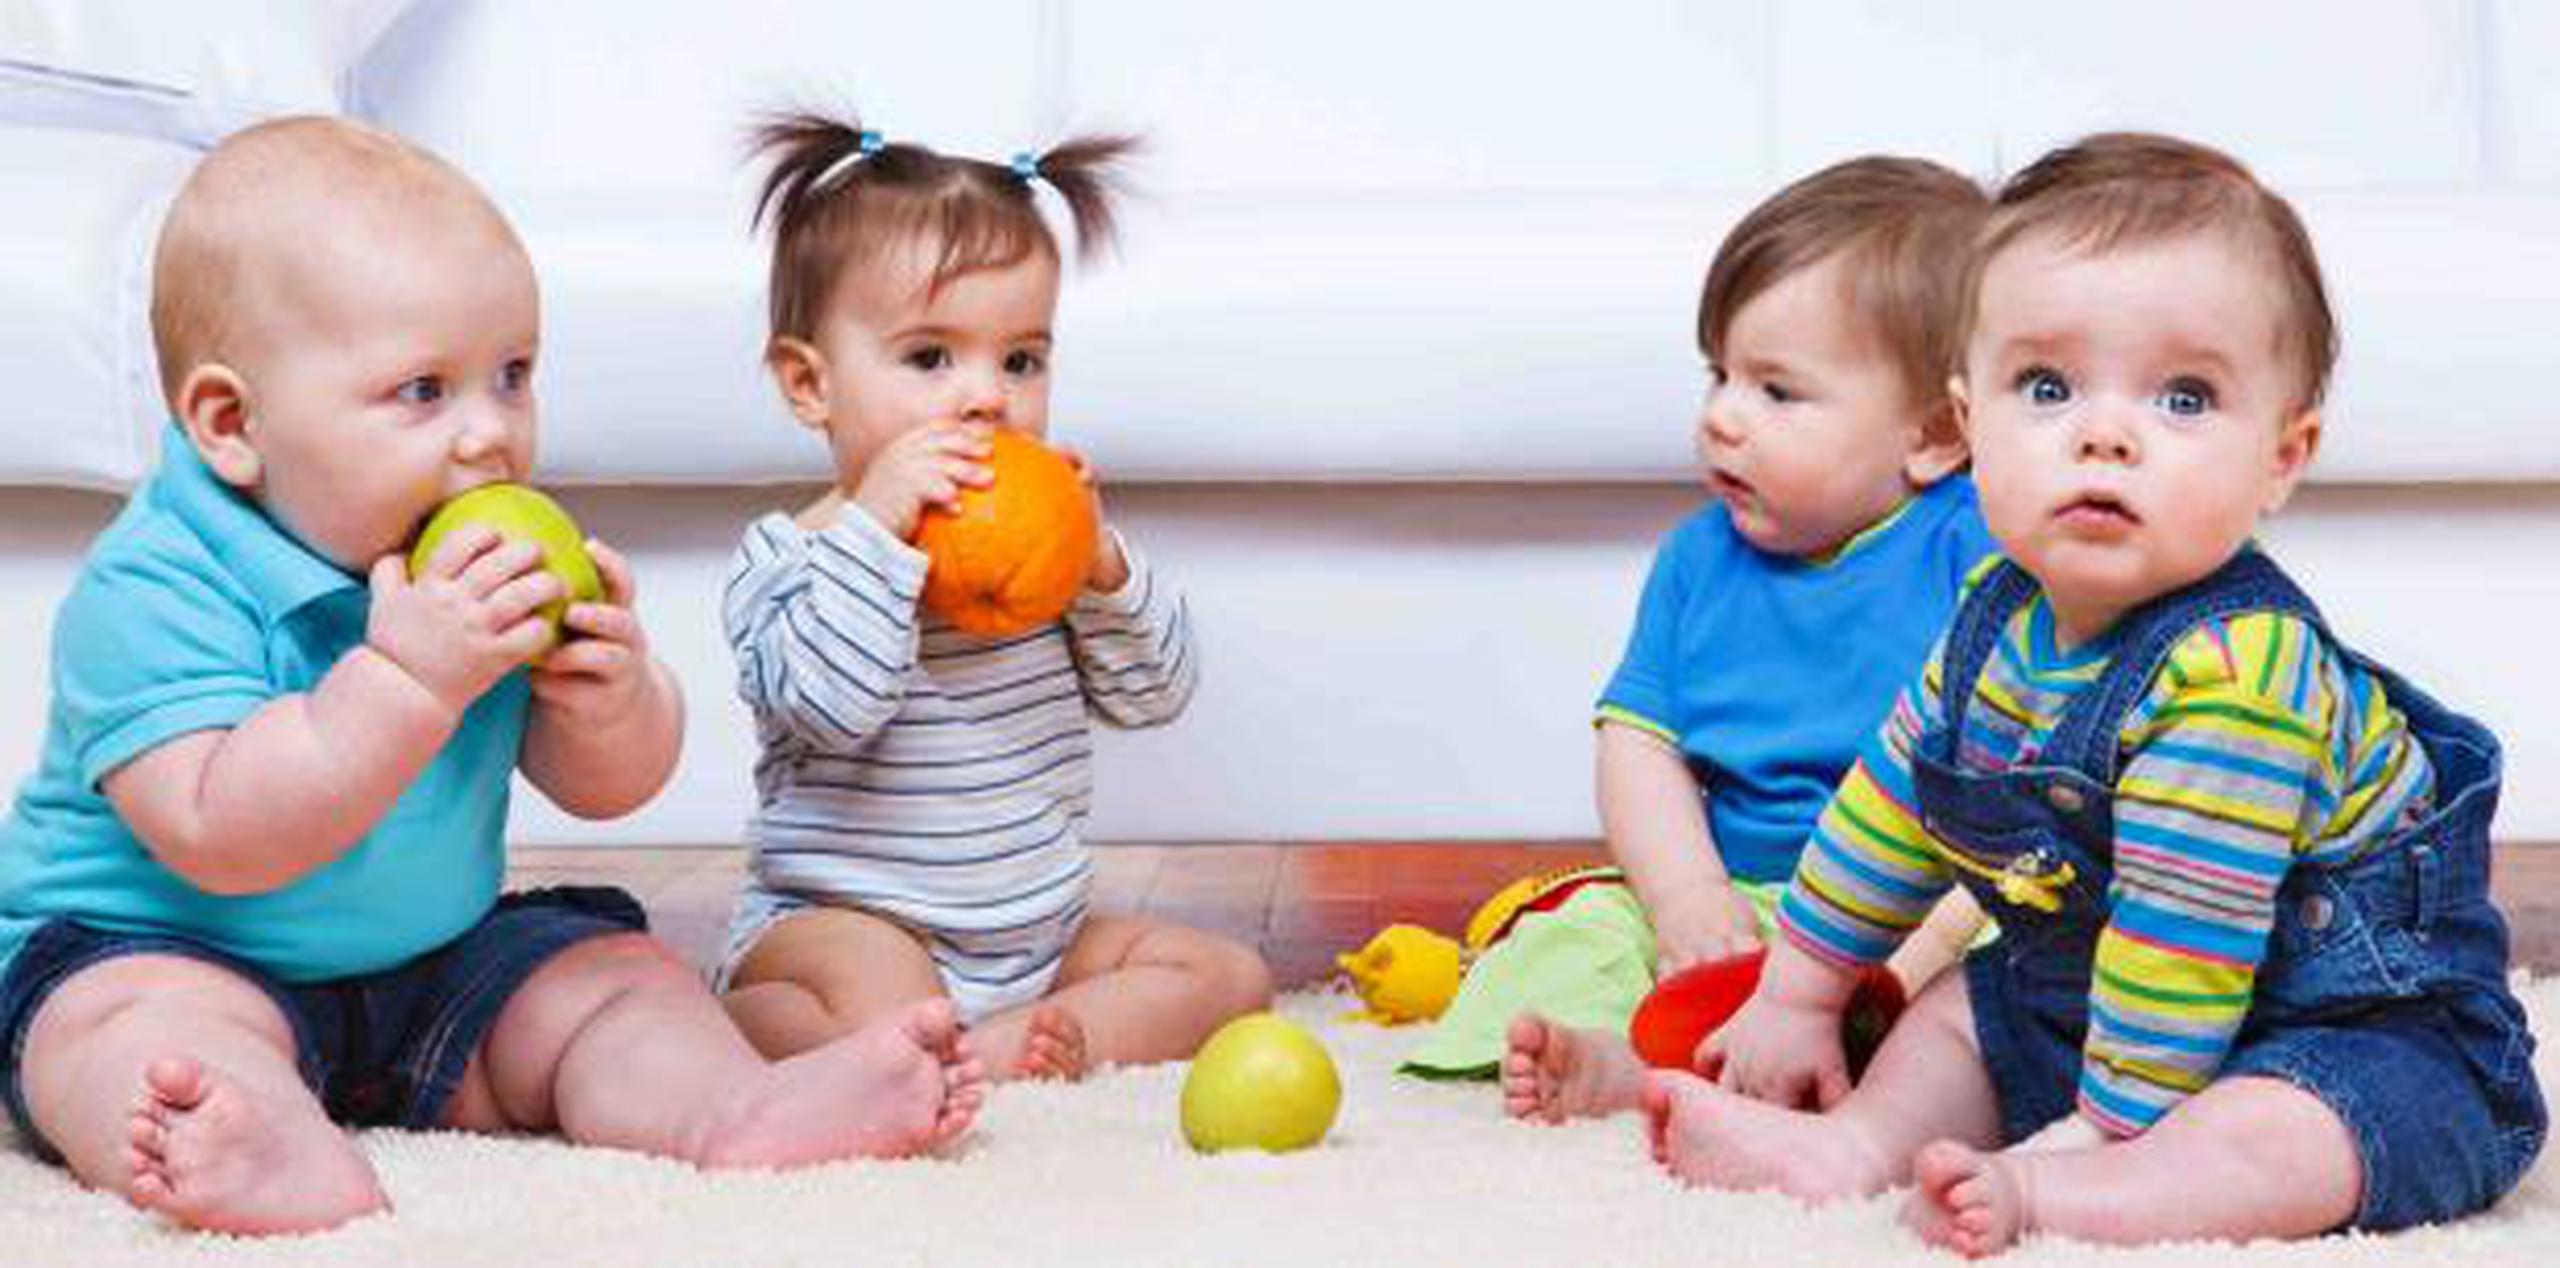 La Administración del Seguro Social da a conocer cada año los 1,000 nombres más populares para bebé. (Shutterstock)